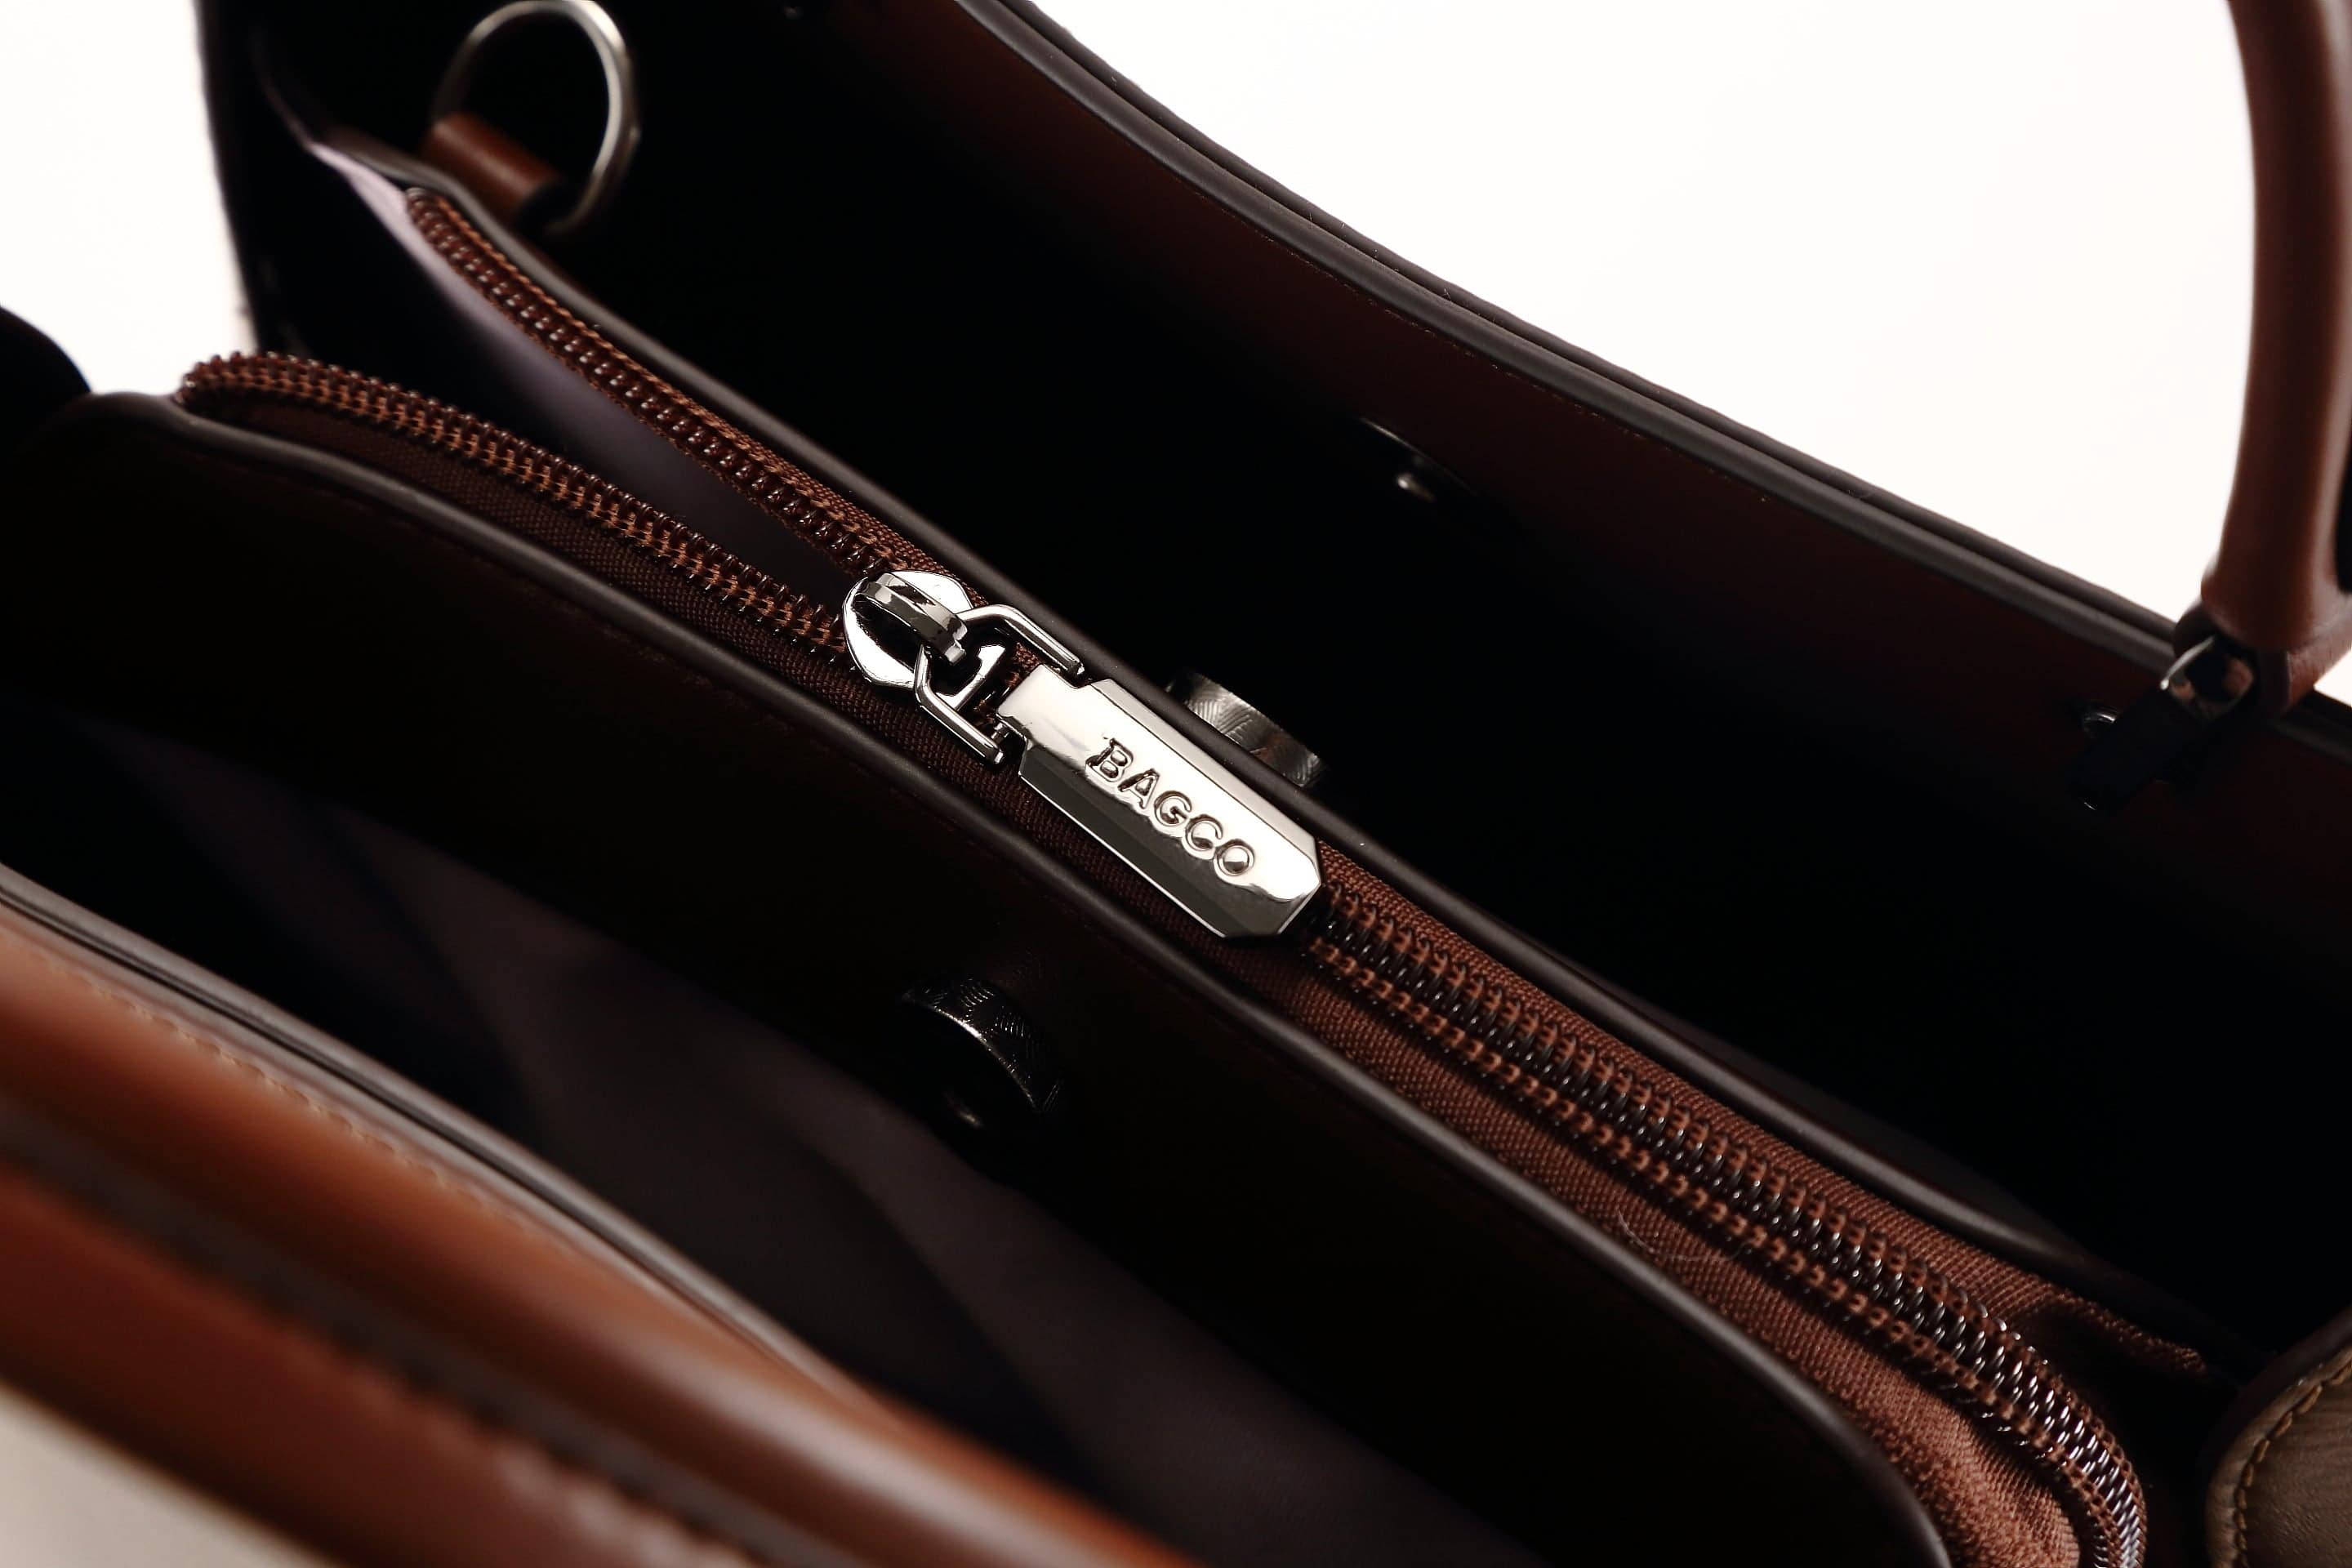 حقيبة يد نسائية باللون الاسود مربعة الشكل كبيرة الحجم بيد وحزام طويل لحملها على الكتف - KSA